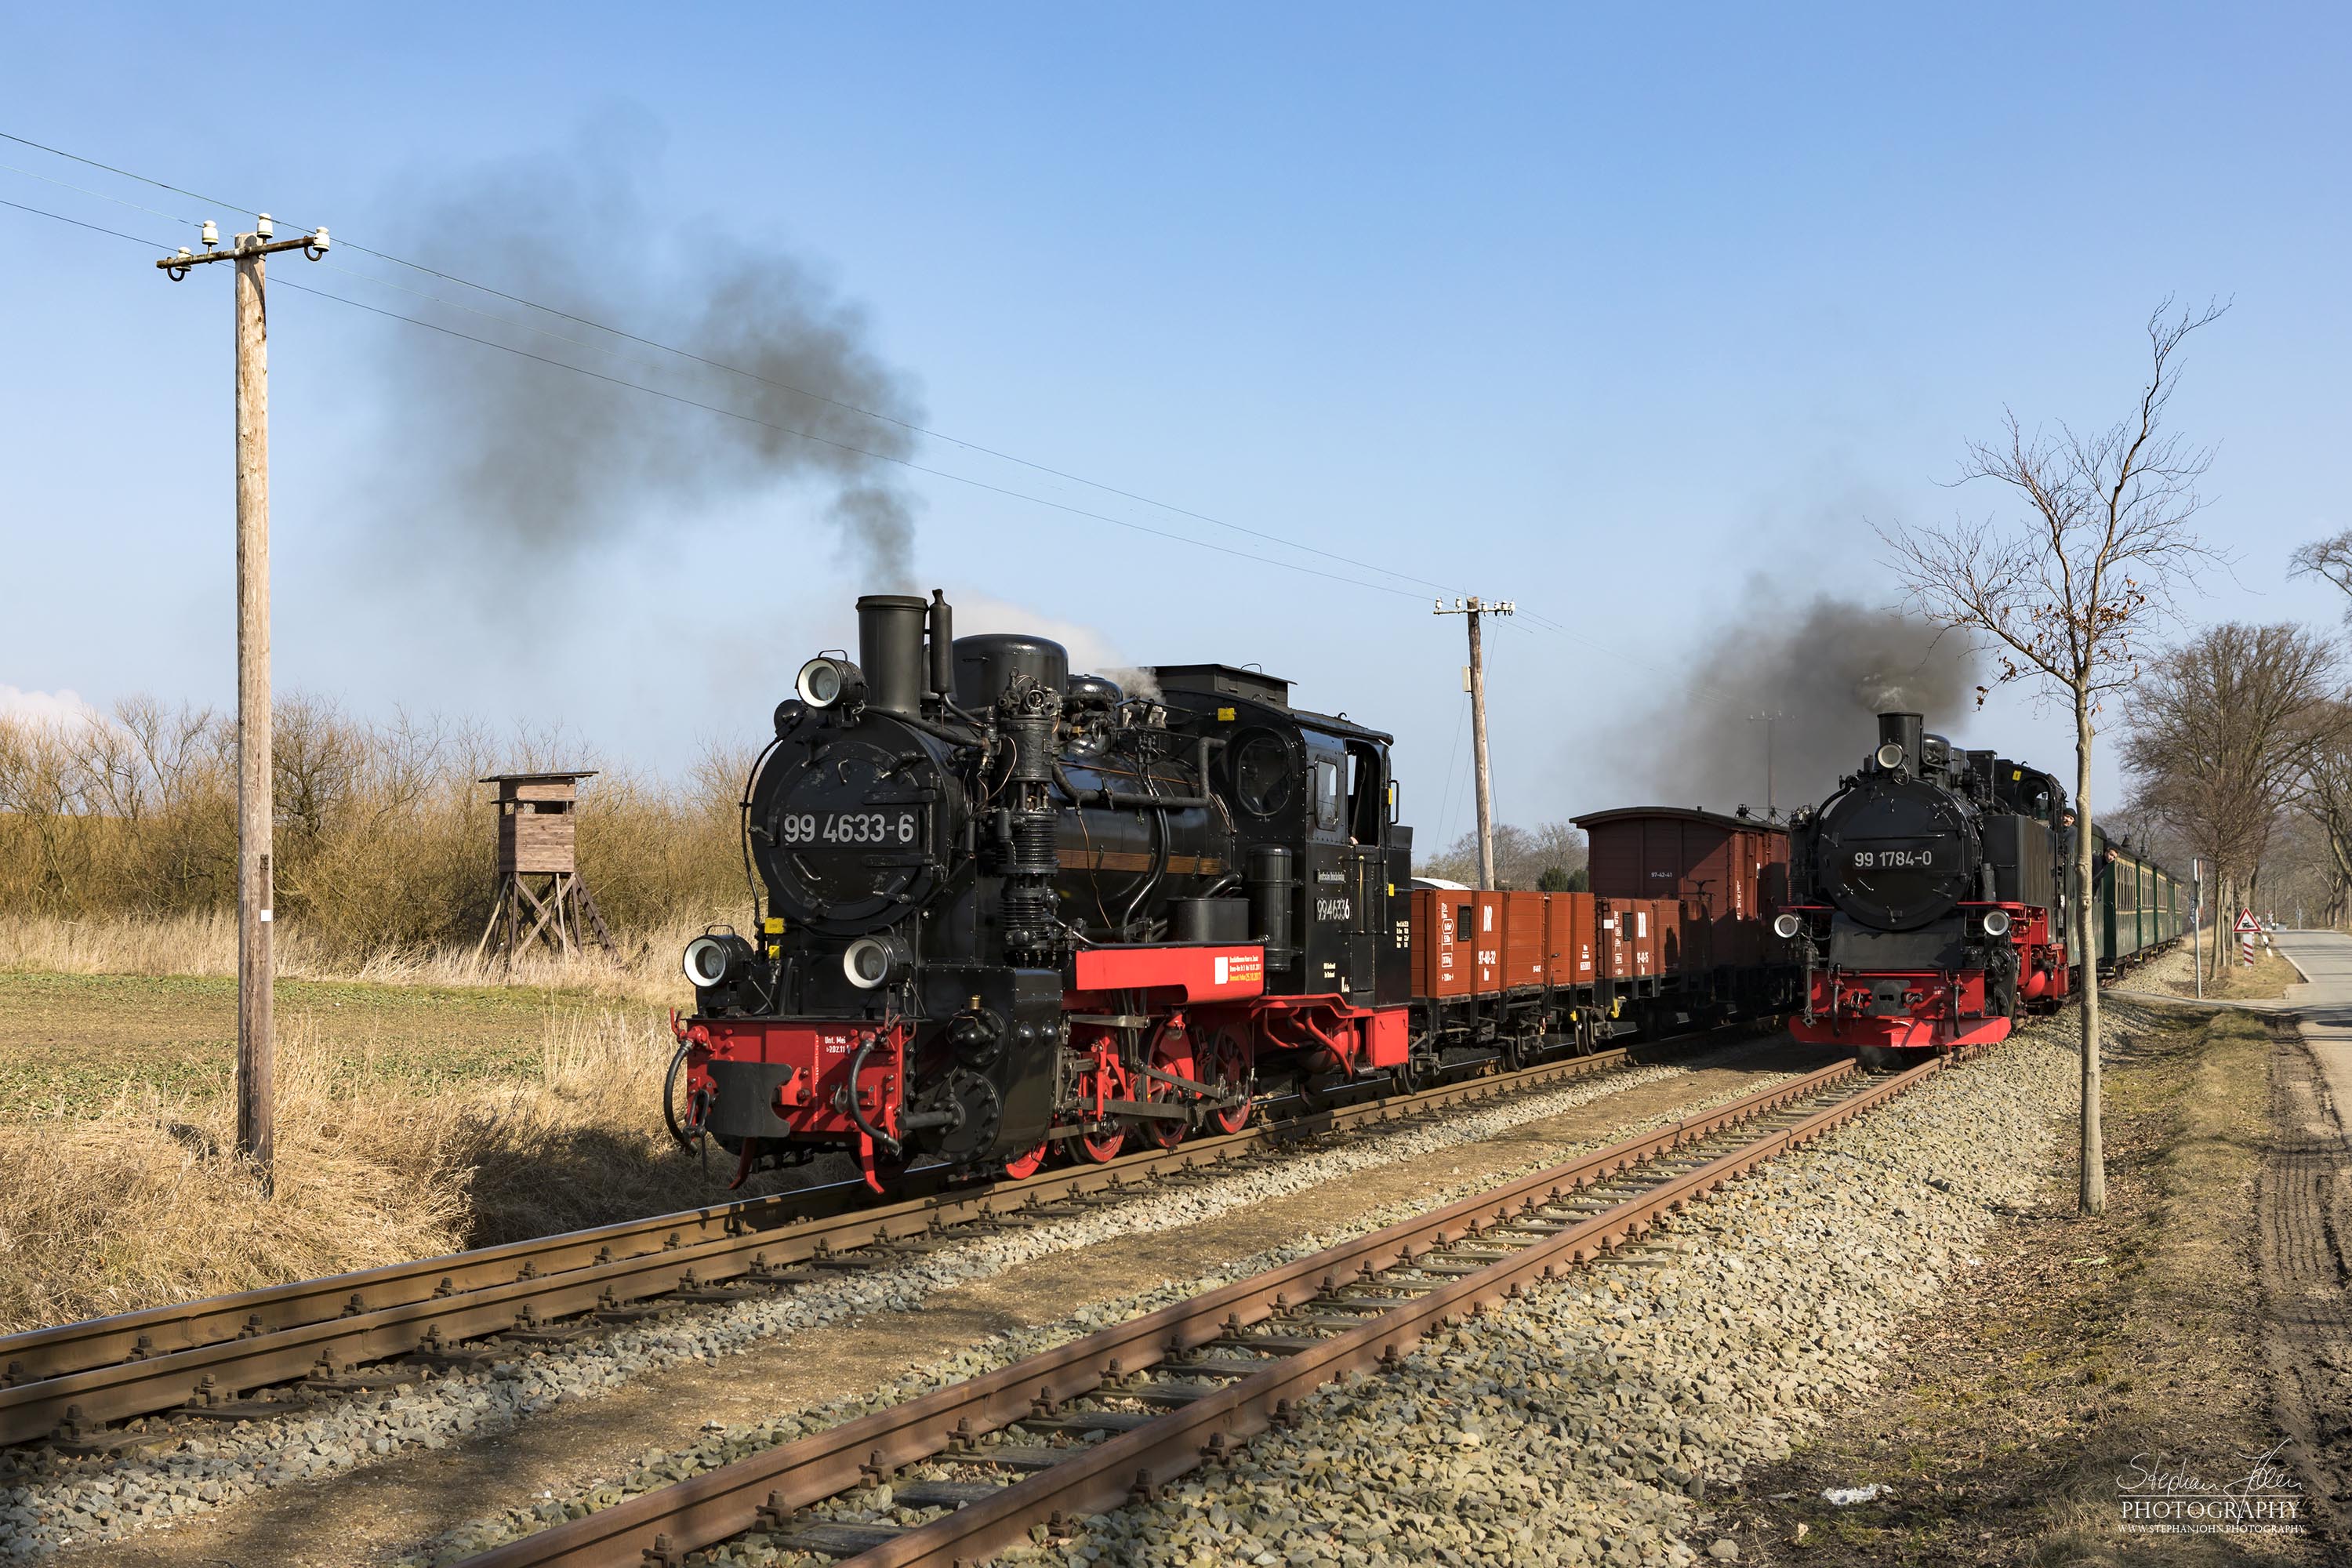 Der GmP mit der Rügen-Lok 99 4633-6 steht in Posewald Kreuzung und wird vom Personenzug nach Putbus mit Lok 99 1784-0 überholt